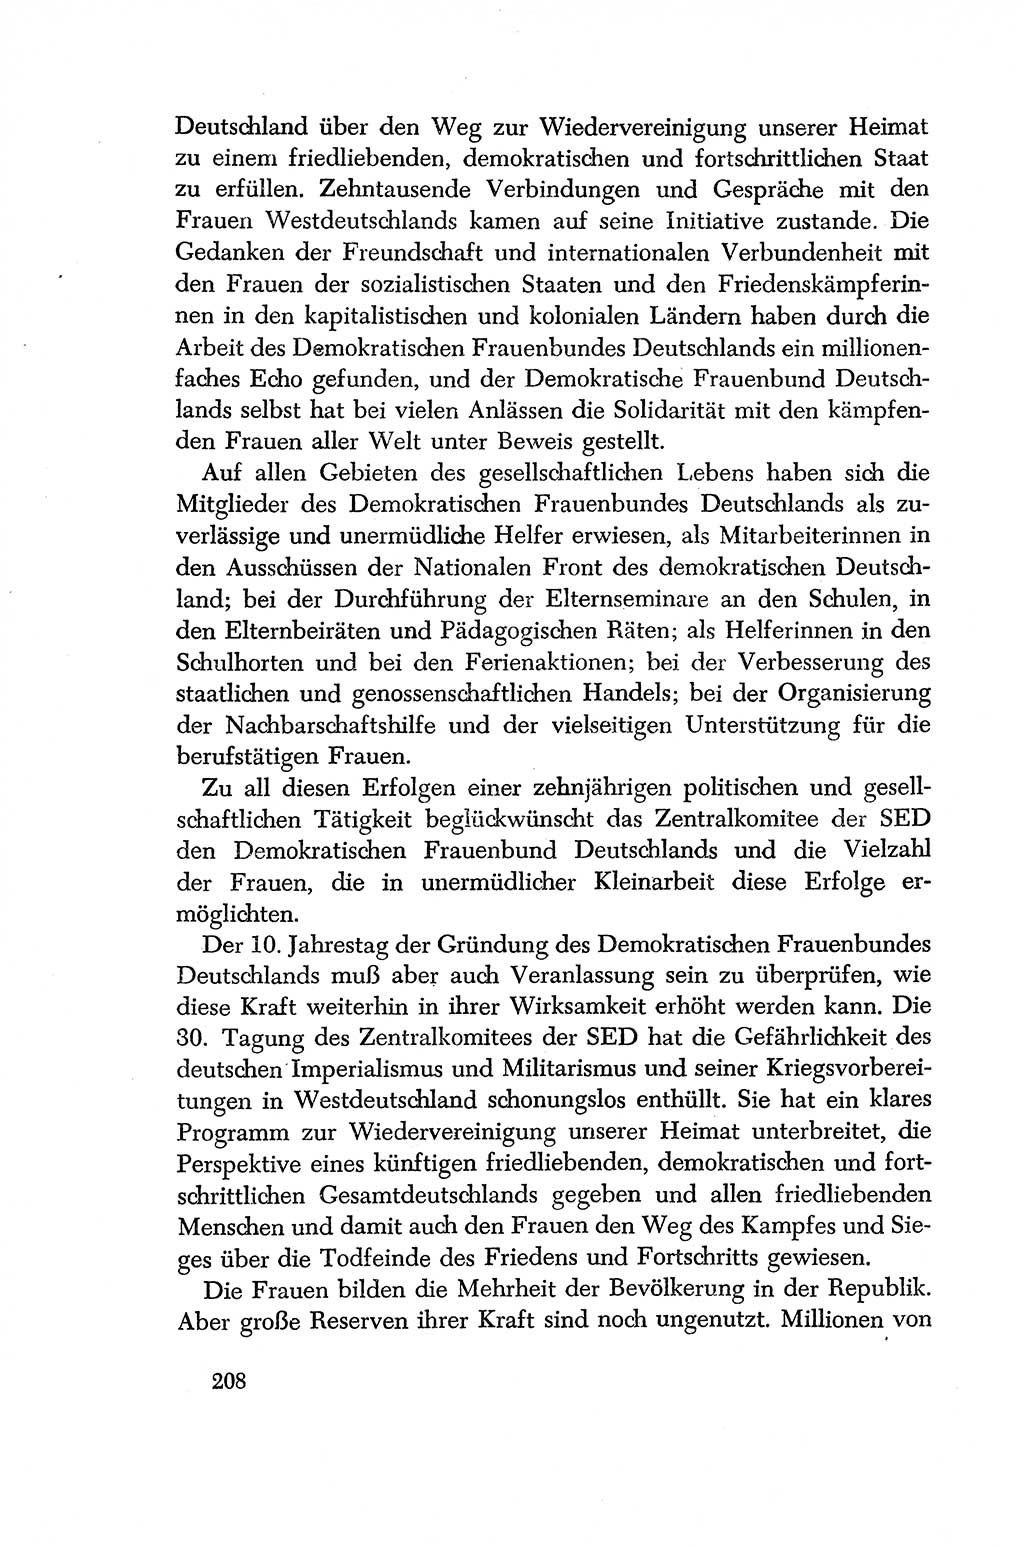 Dokumente der Sozialistischen Einheitspartei Deutschlands (SED) [Deutsche Demokratische Republik (DDR)] 1956-1957, Seite 208 (Dok. SED DDR 1956-1957, S. 208)